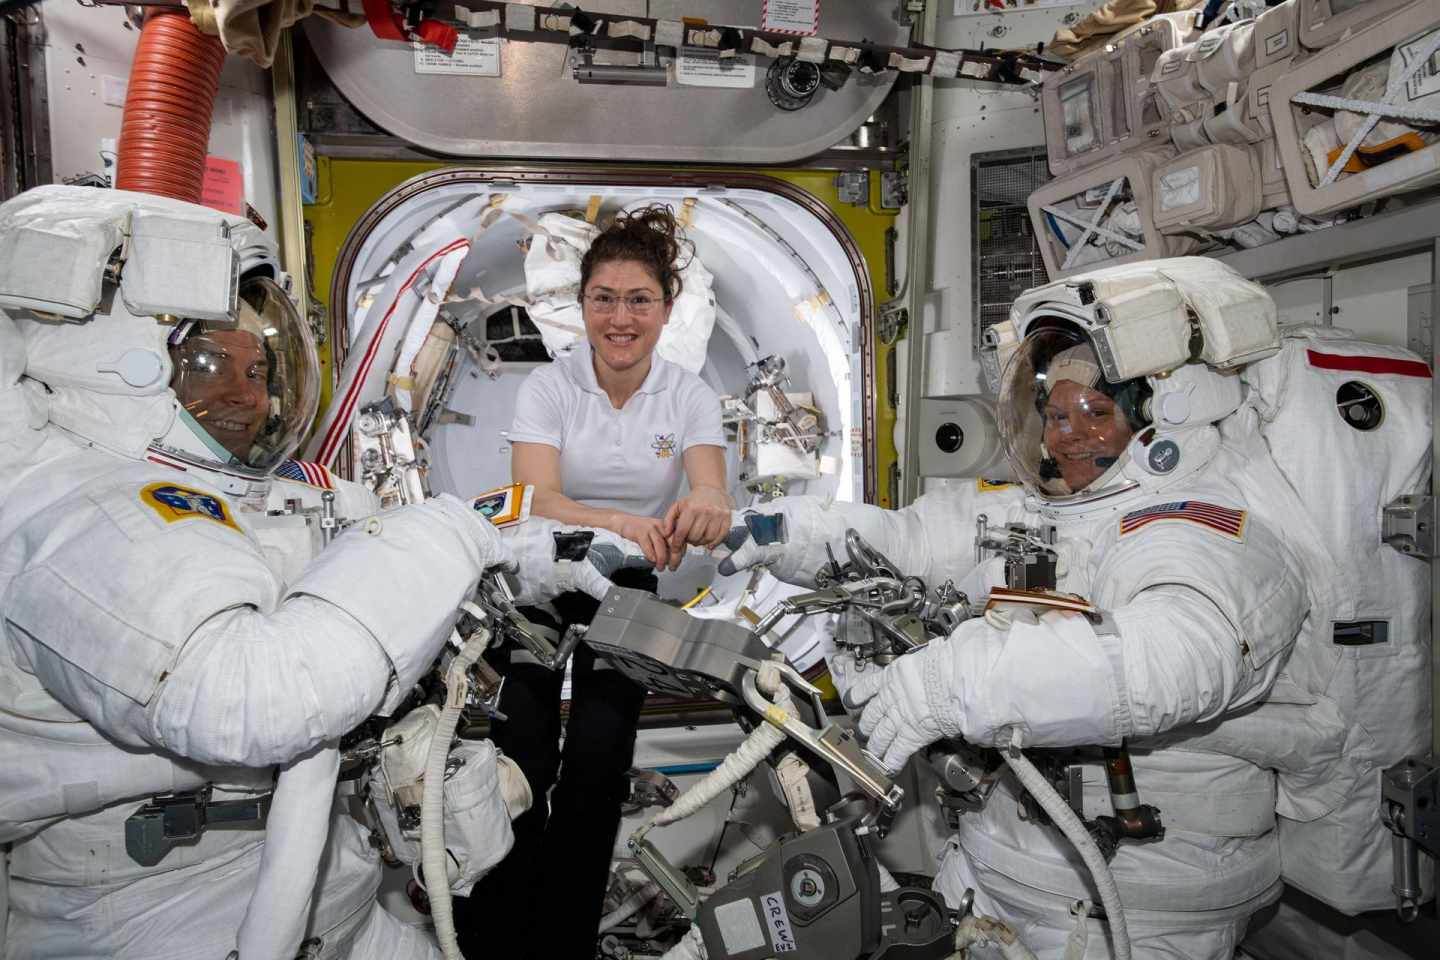 Aplazada la primera caminata espacial de dos mujeres por falta trajes adecuados